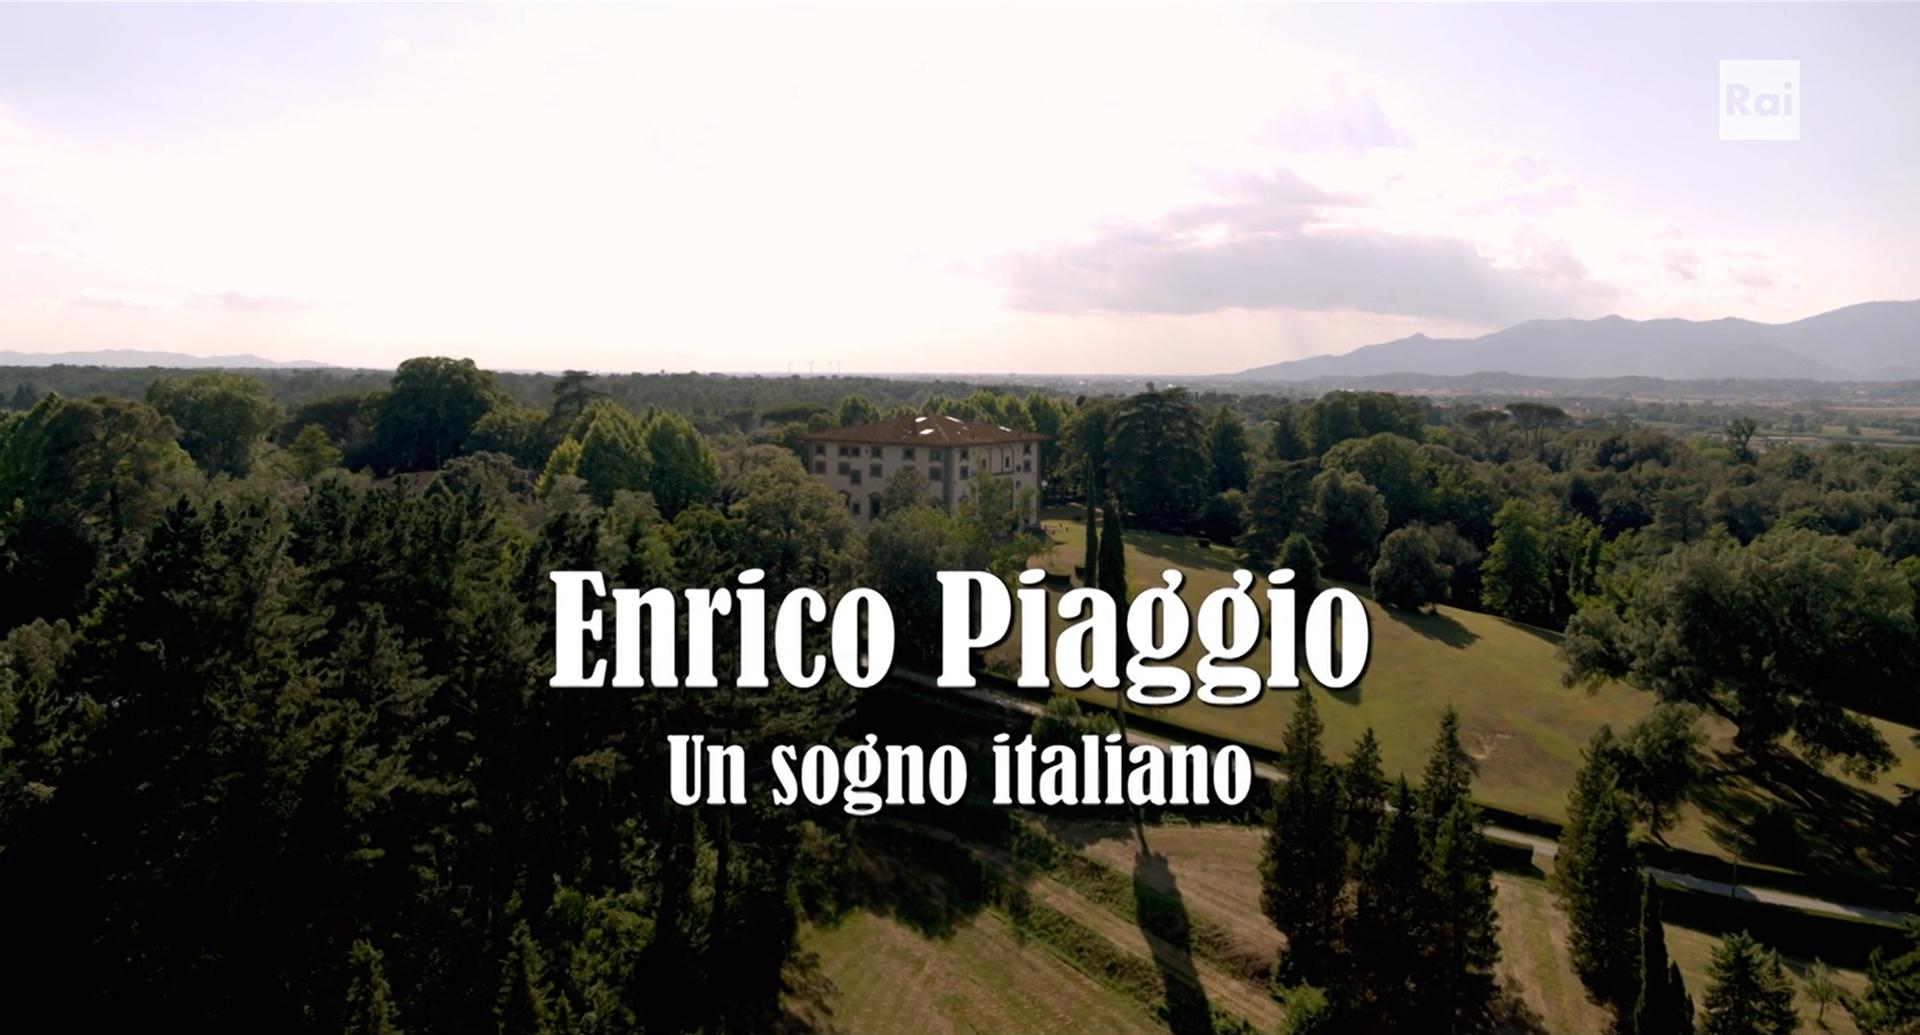 1920px-Enrico_Piaggio_-_Un_sogno_italiano